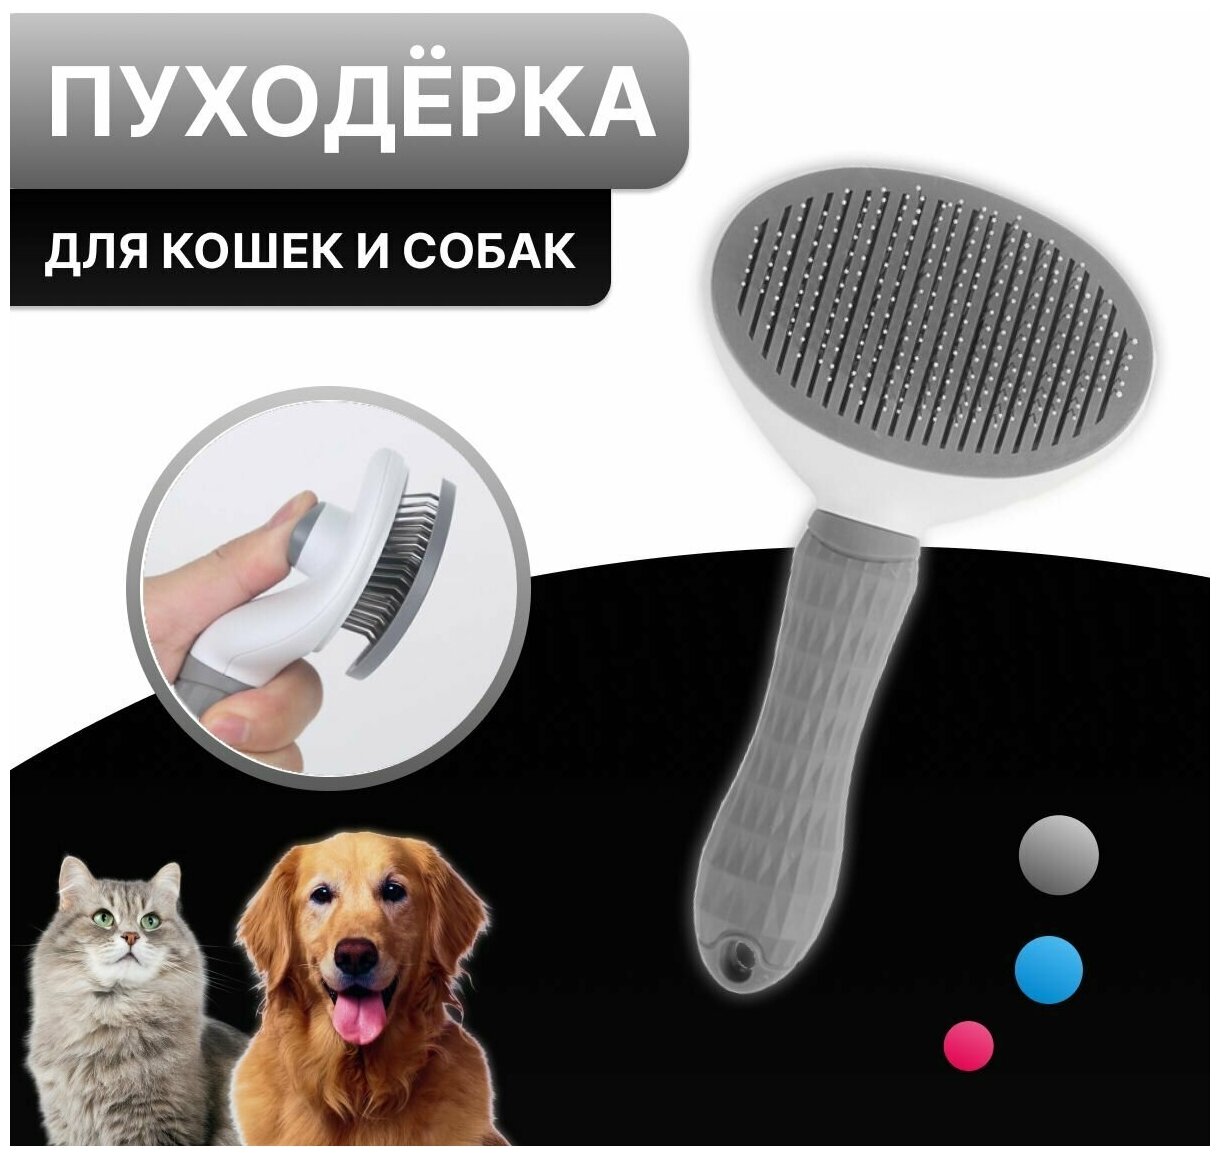 Пуходёрка для кошек и собак расчёска с кнопкой самоочистки для вычесывания шерсти. Серый.